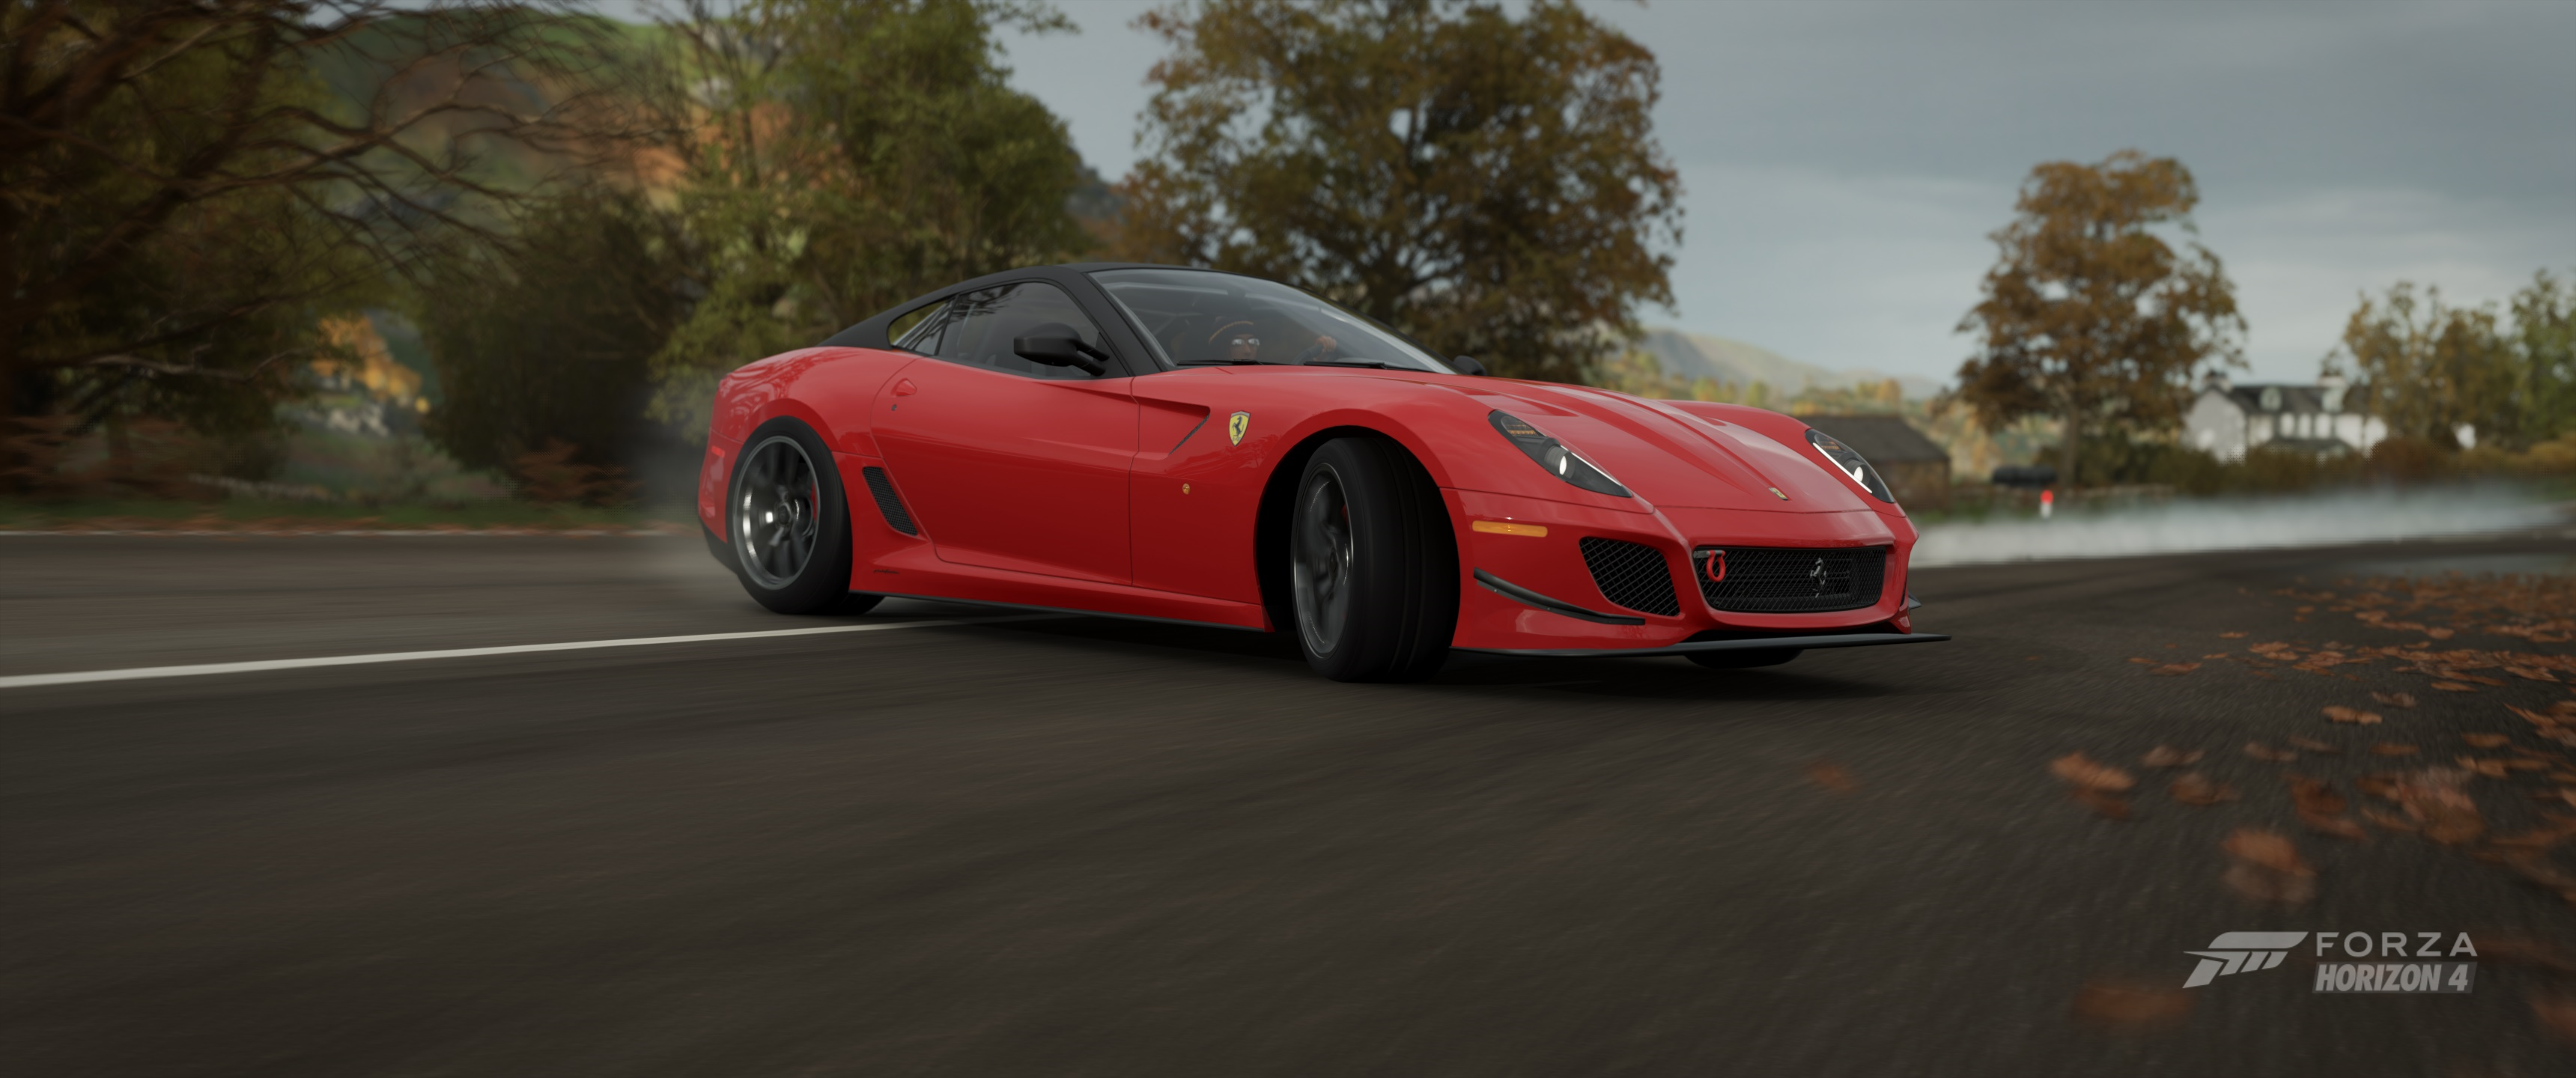 Forza Forza Horizon 4 Racing Car Ultrawide Video Games Ferrari GTO Drift 3440x1440